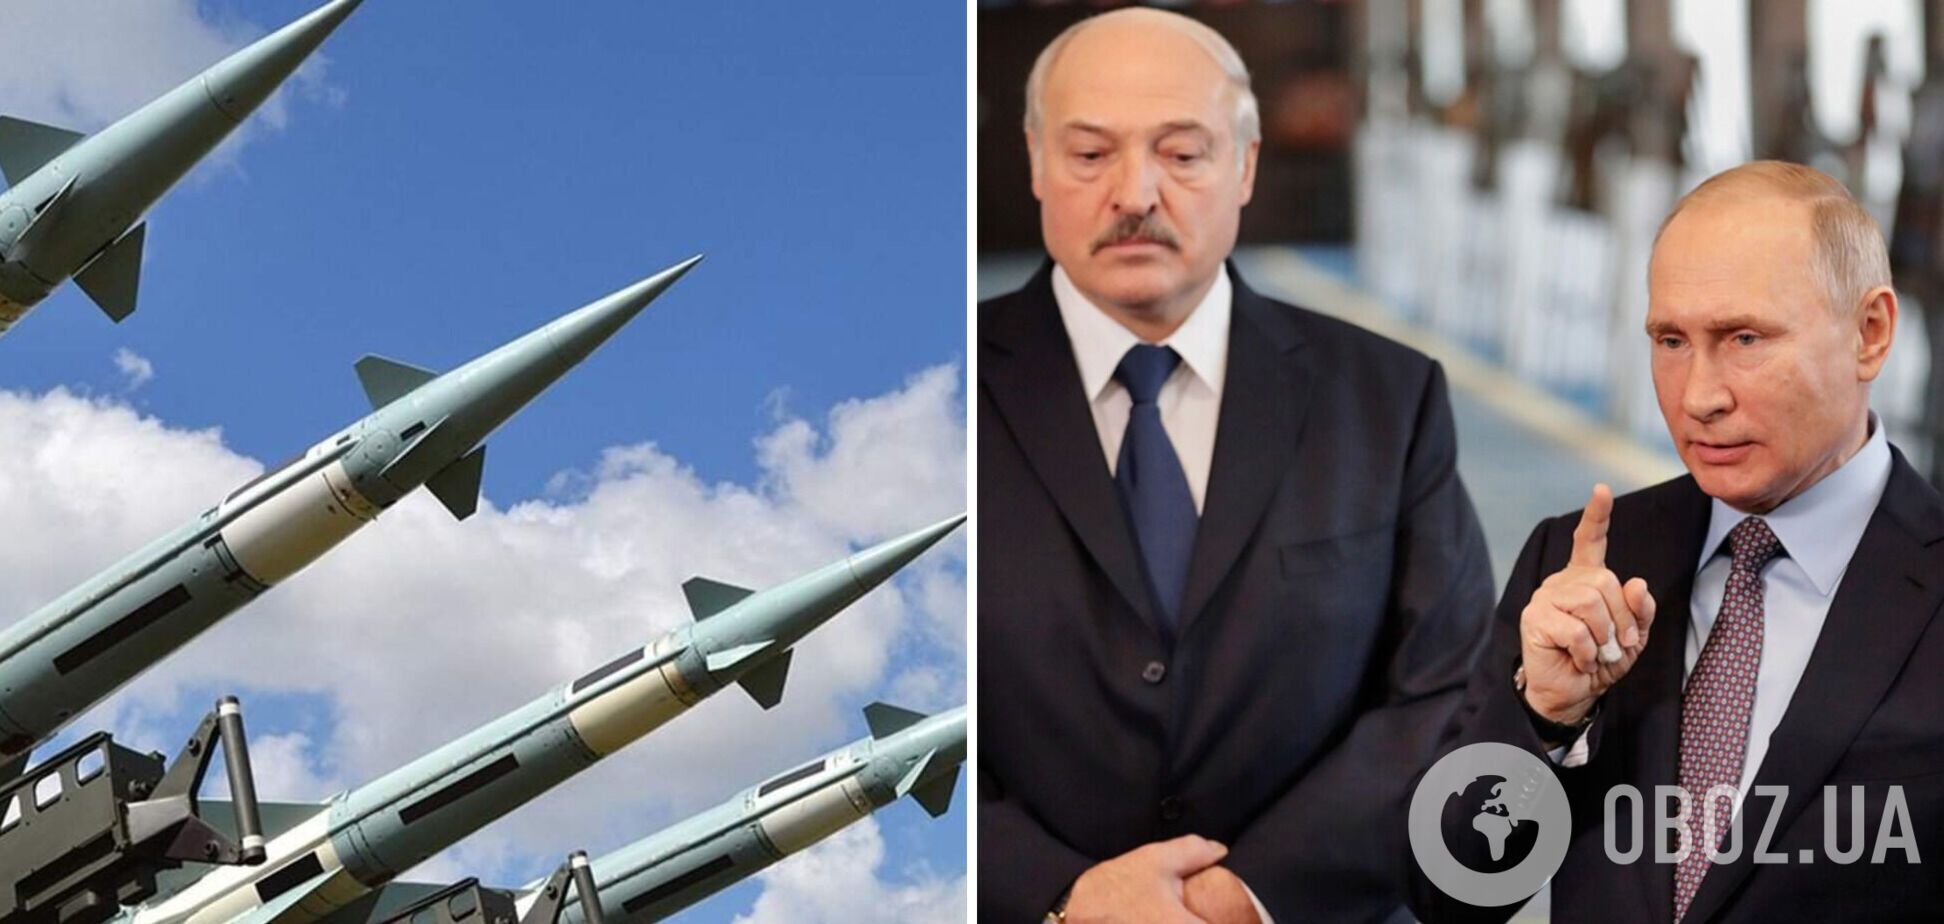 Путін готується до розміщення в Білорусі ядерної зброї, – білоруський опозиціонер Латушко